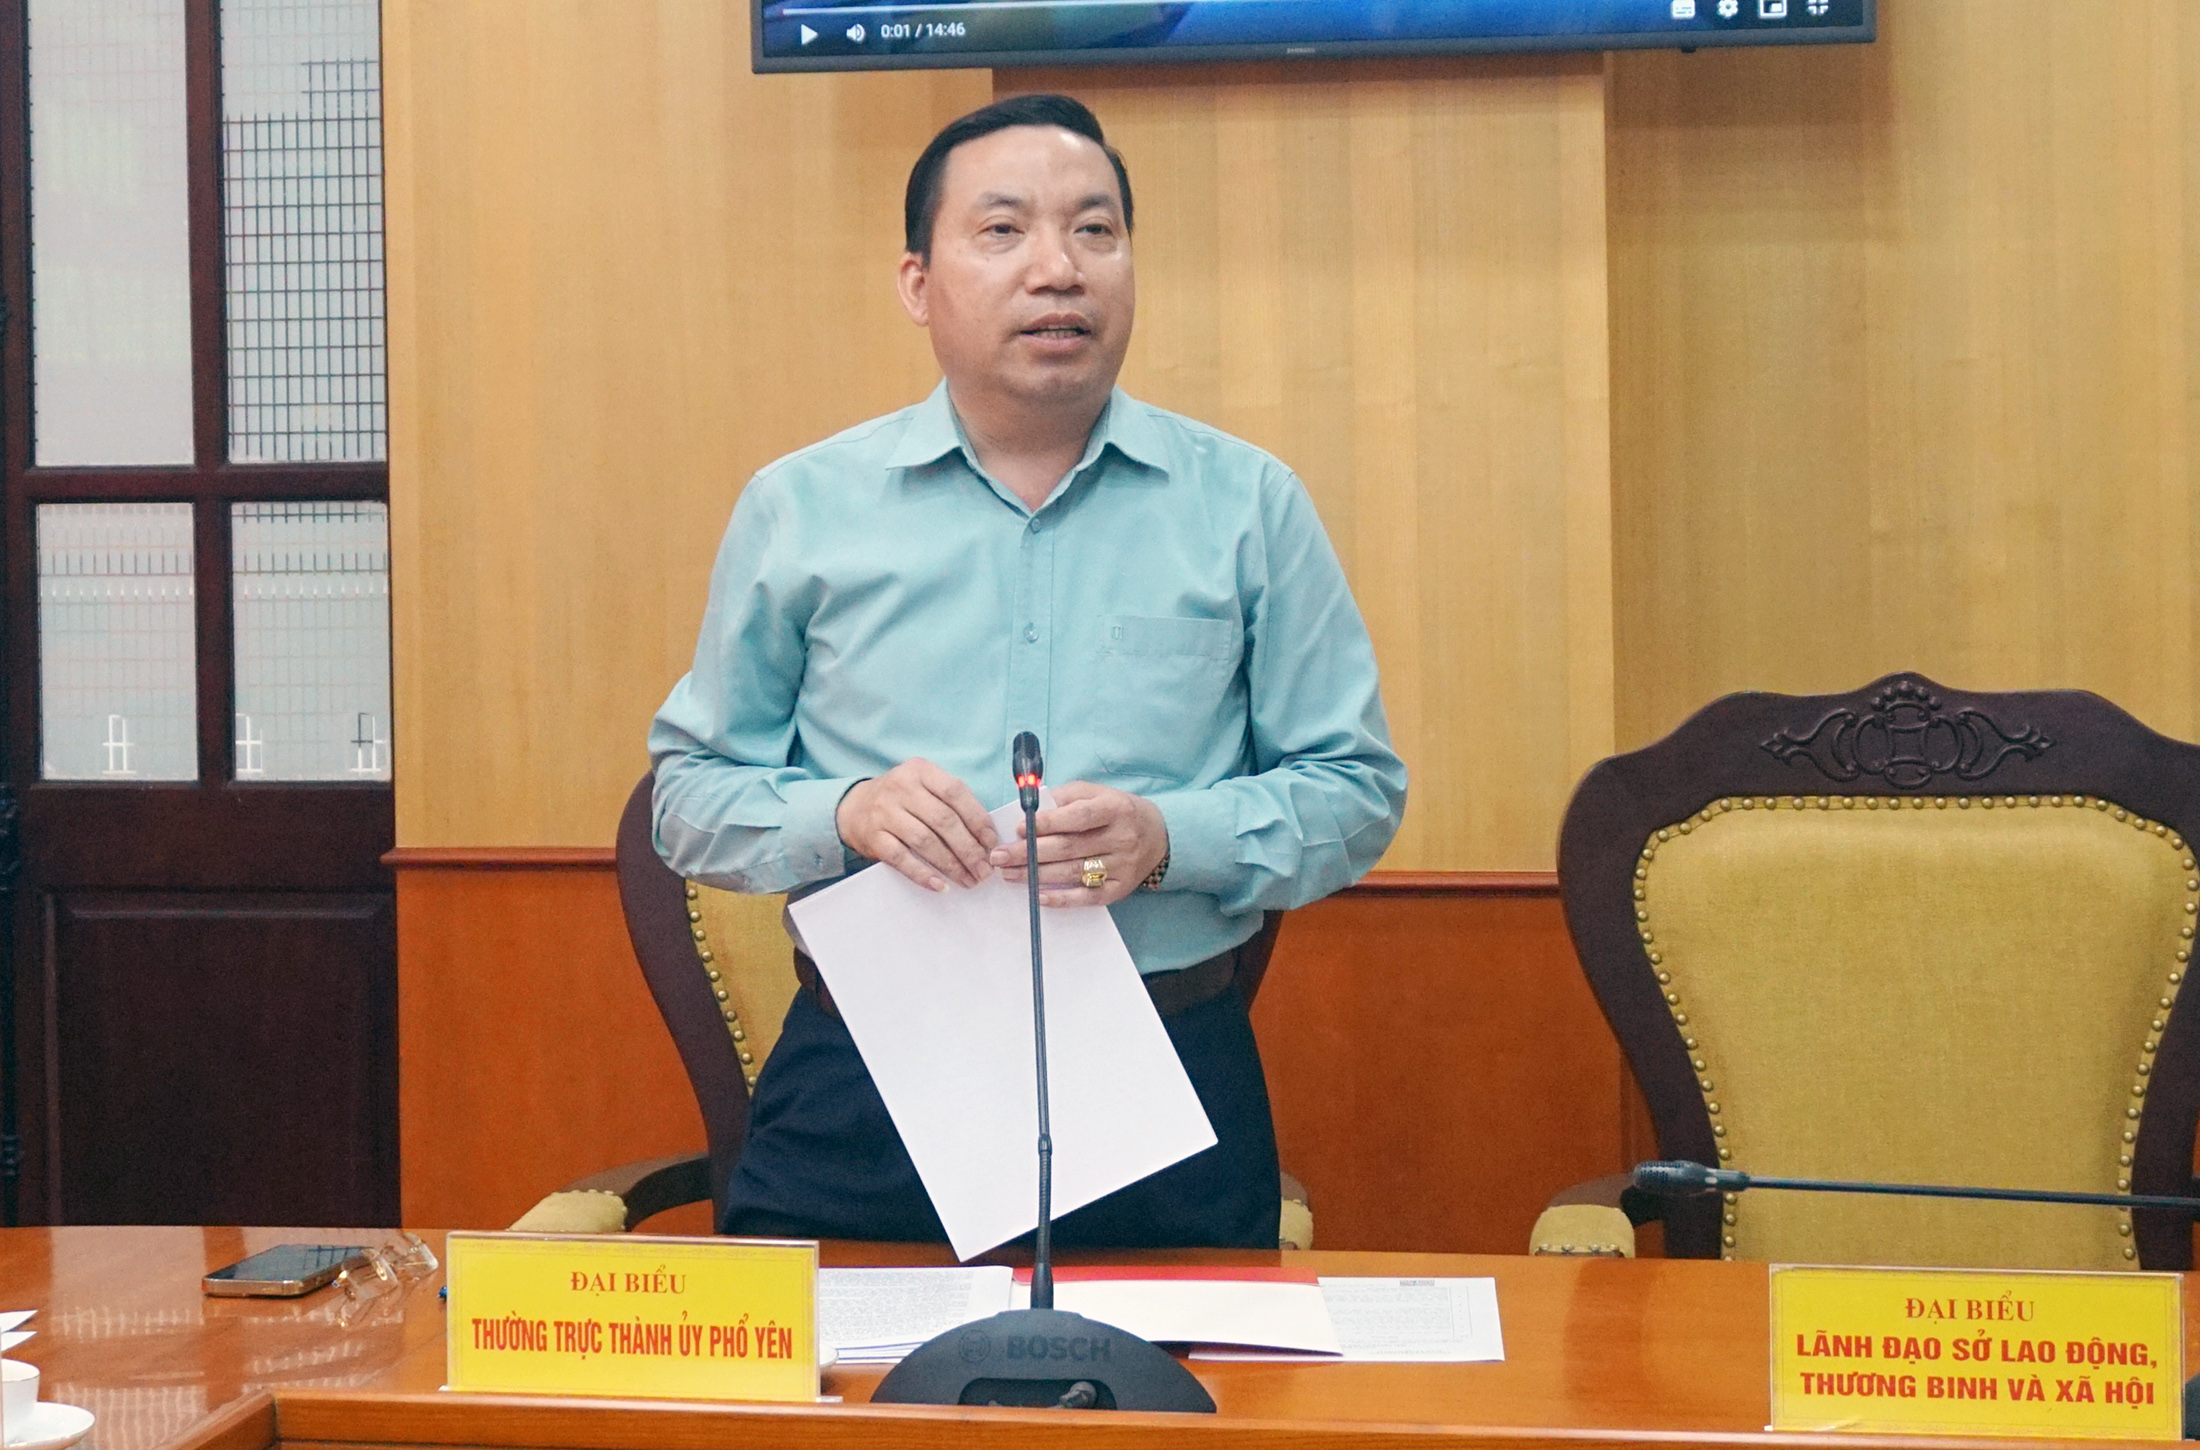 Đồng chí Nguyễn Xuân Trường, Phó Bí thư Thường trực Thành ủy Phổ Yên cung cấp thông tin tại Hội nghị